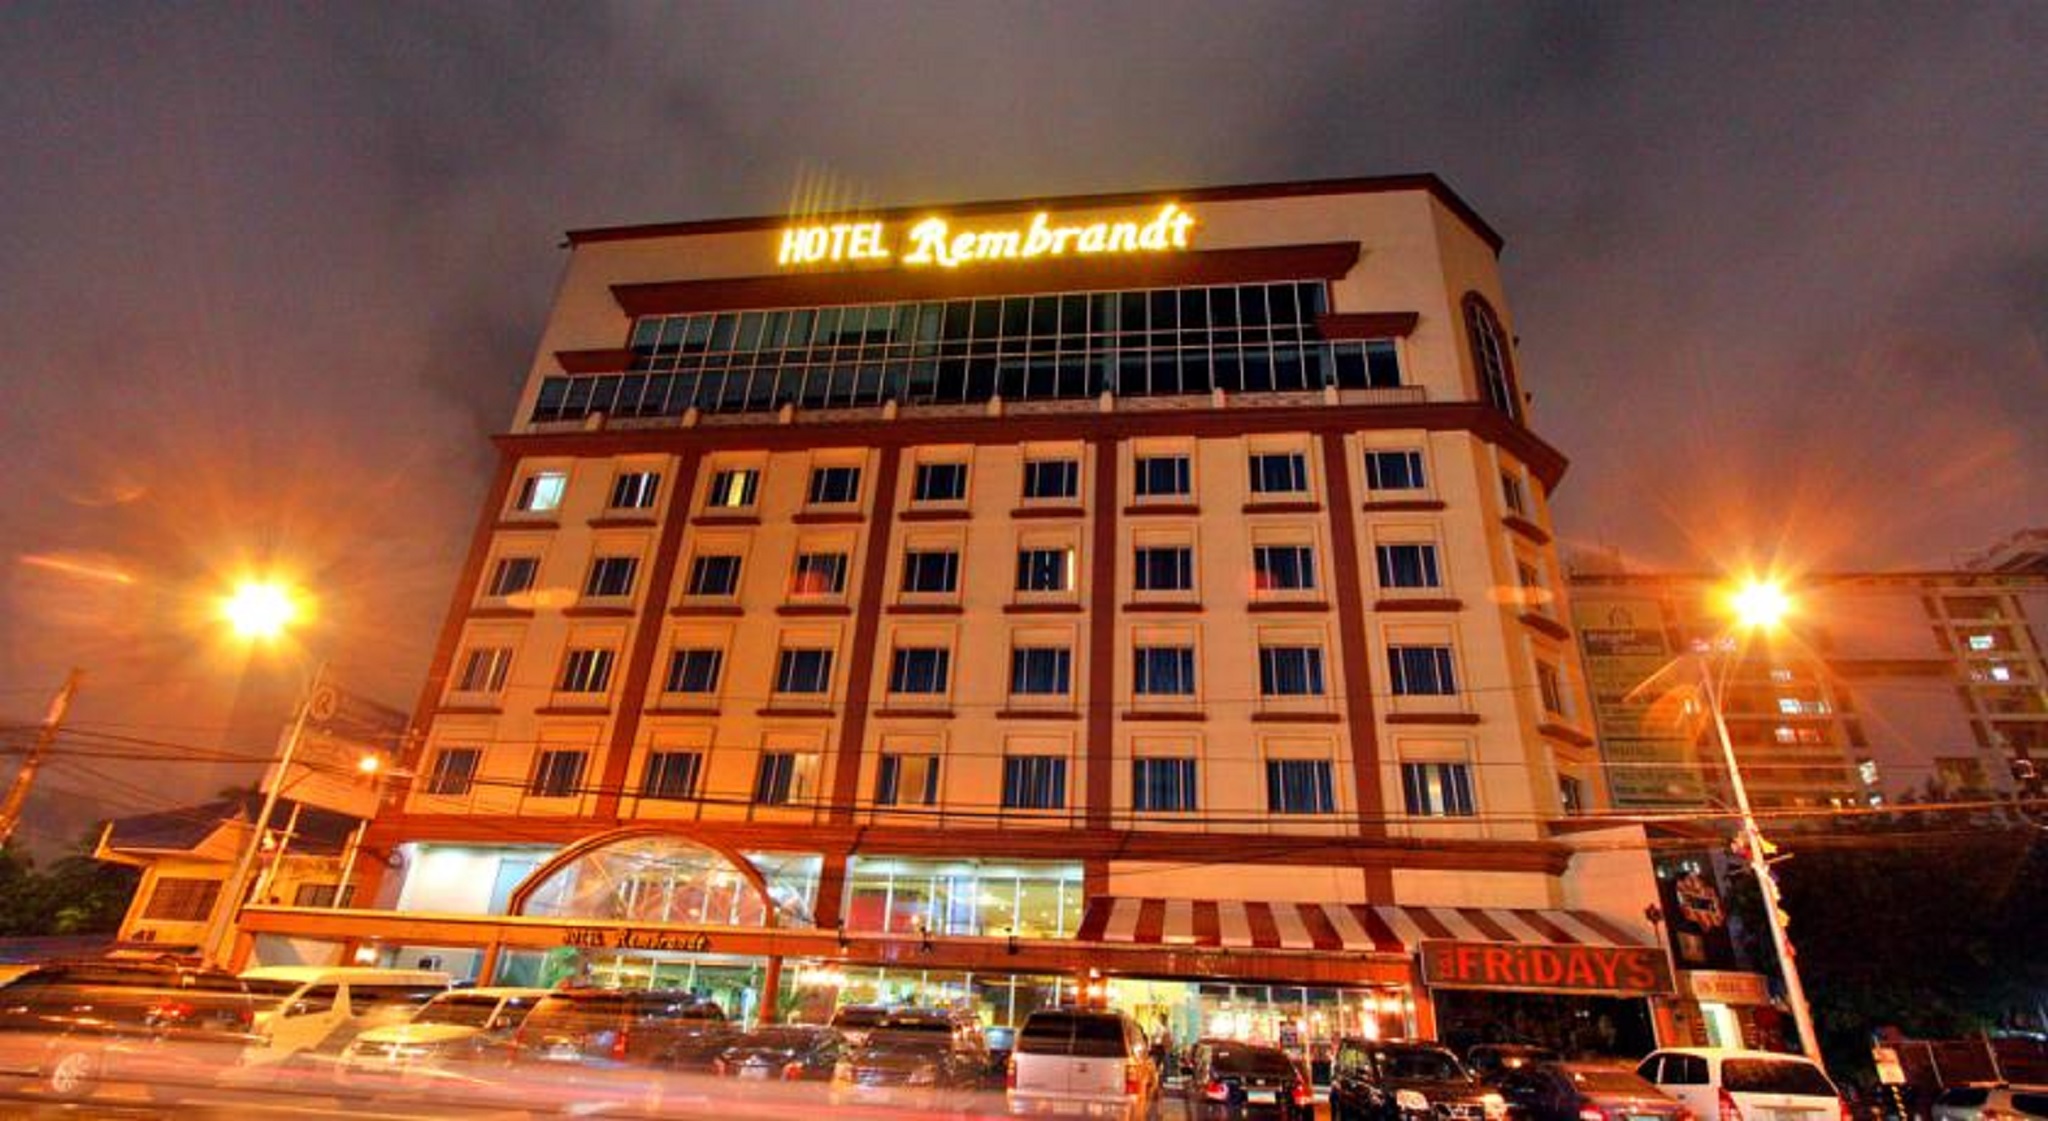 Hotel Rembrandt image